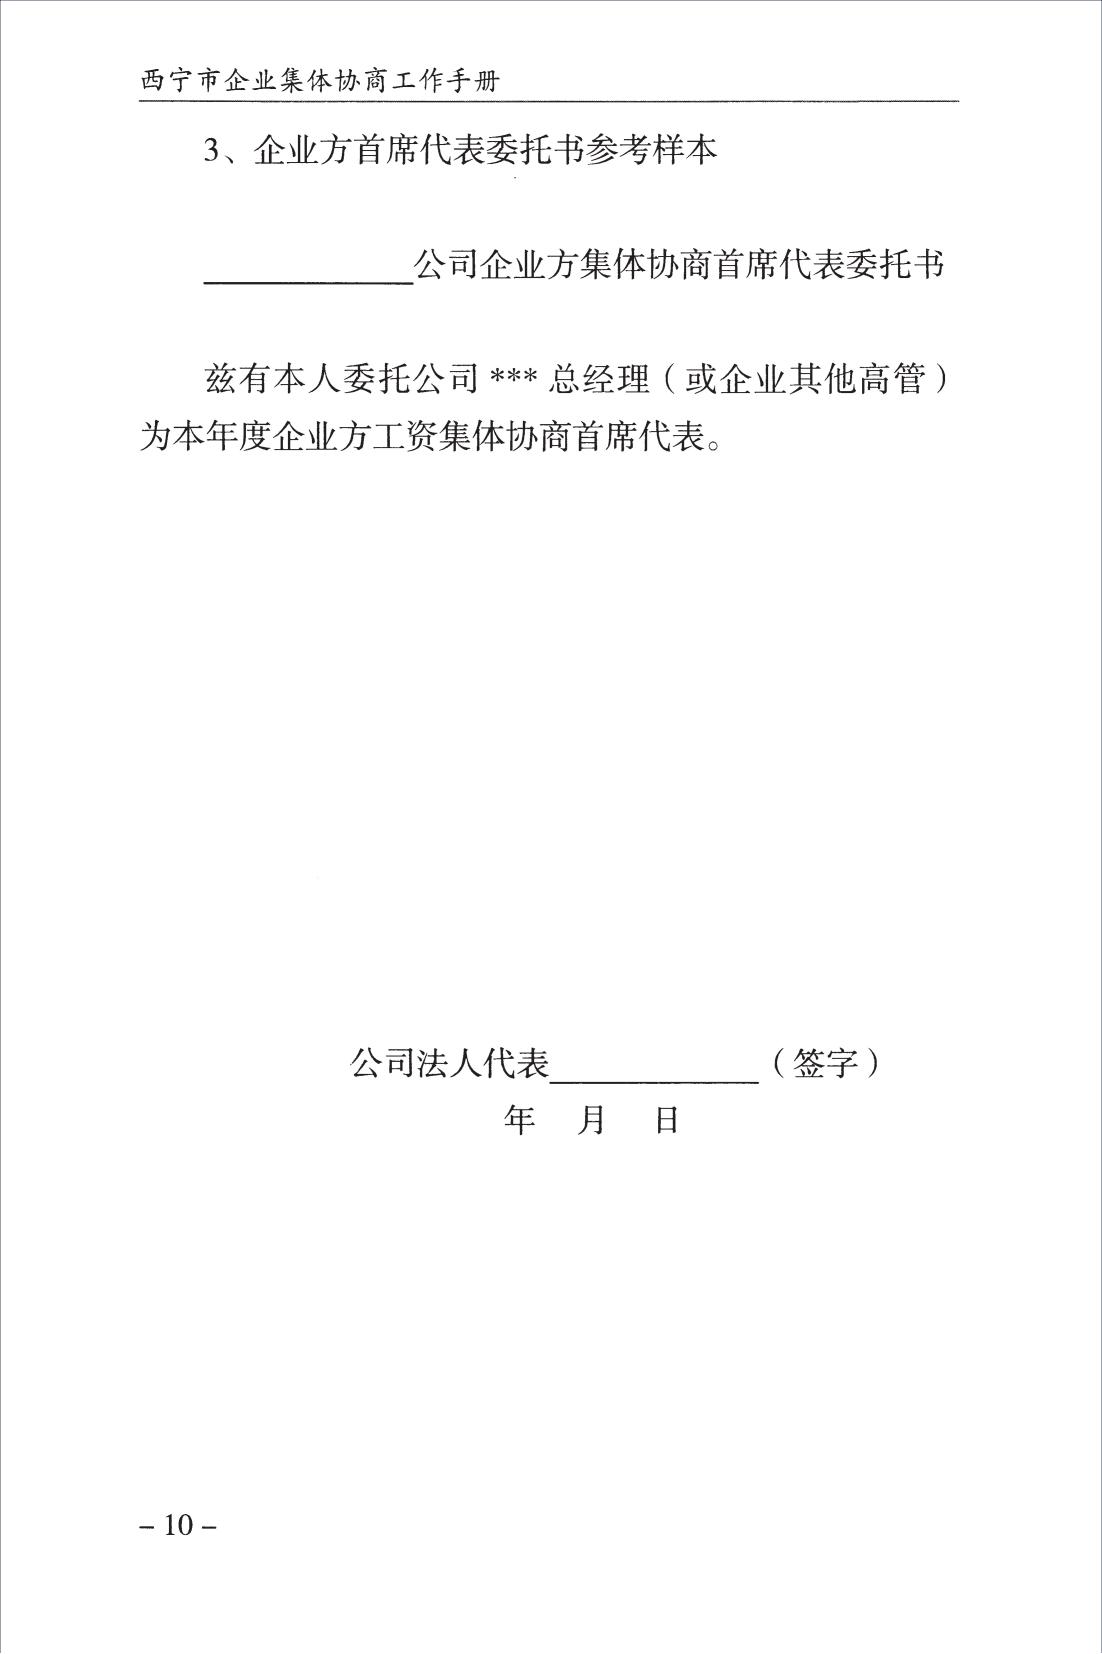 西宁市企业集体协商工作手册_12.jpg